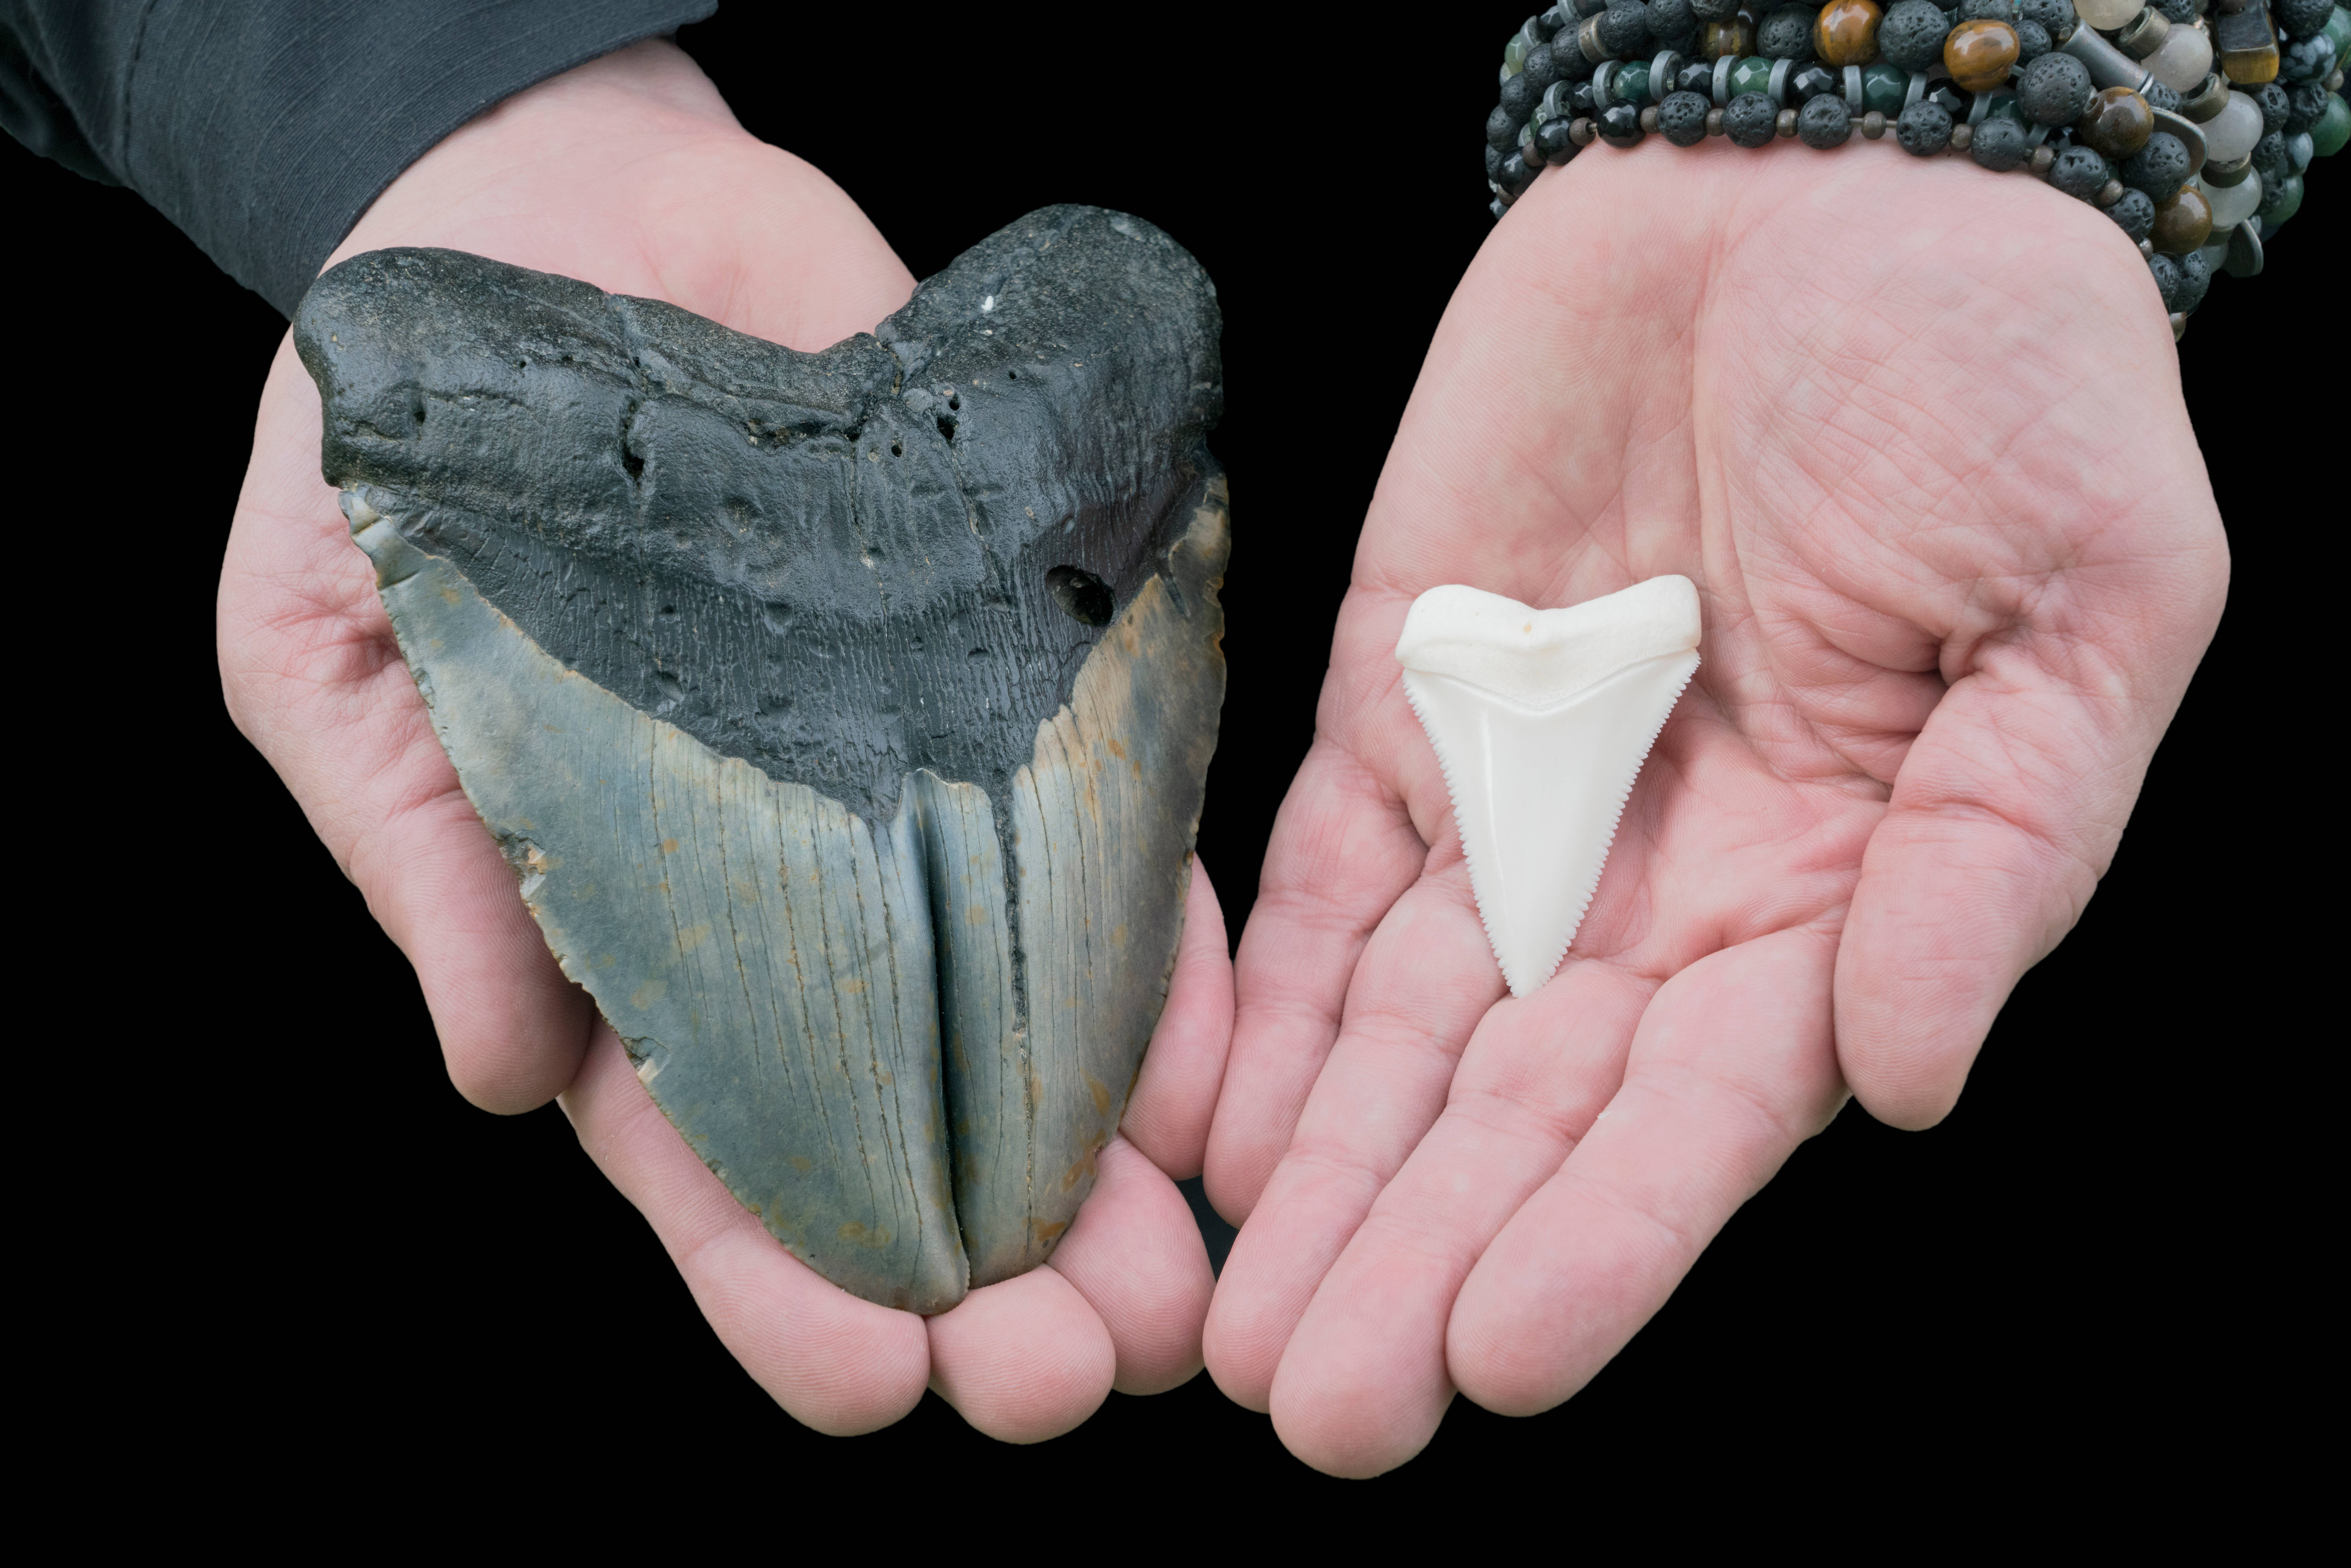 Un adolescent aurait découvert une dent de mégalodon vieille de 3,6 millions d’années